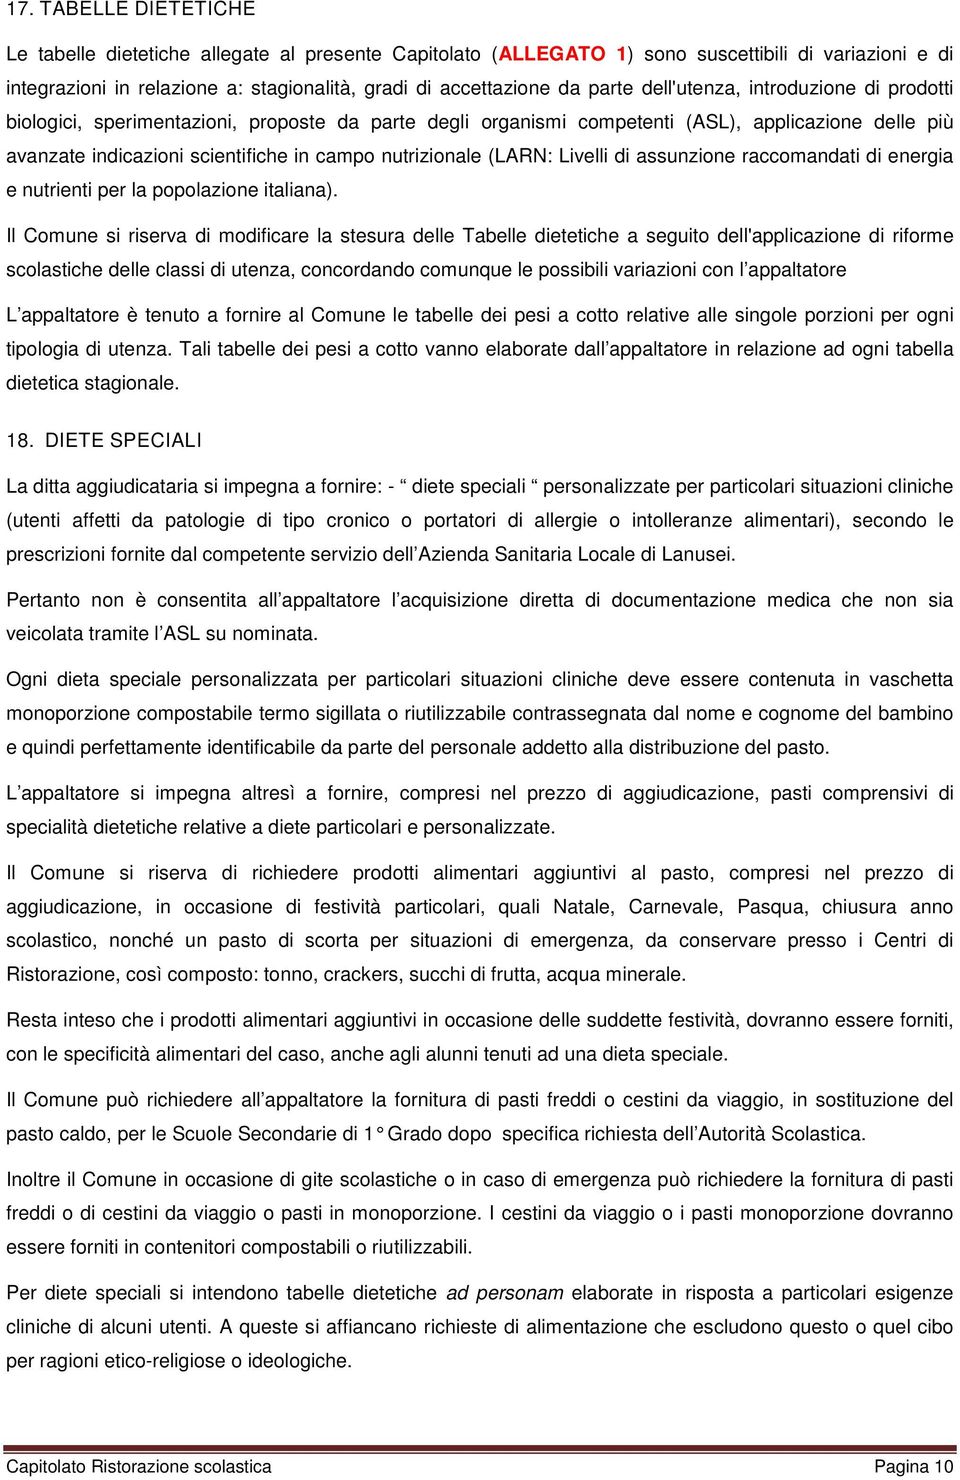 nutrizionale (LARN: Livelli di assunzione raccomandati di energia e nutrienti per la popolazione italiana).